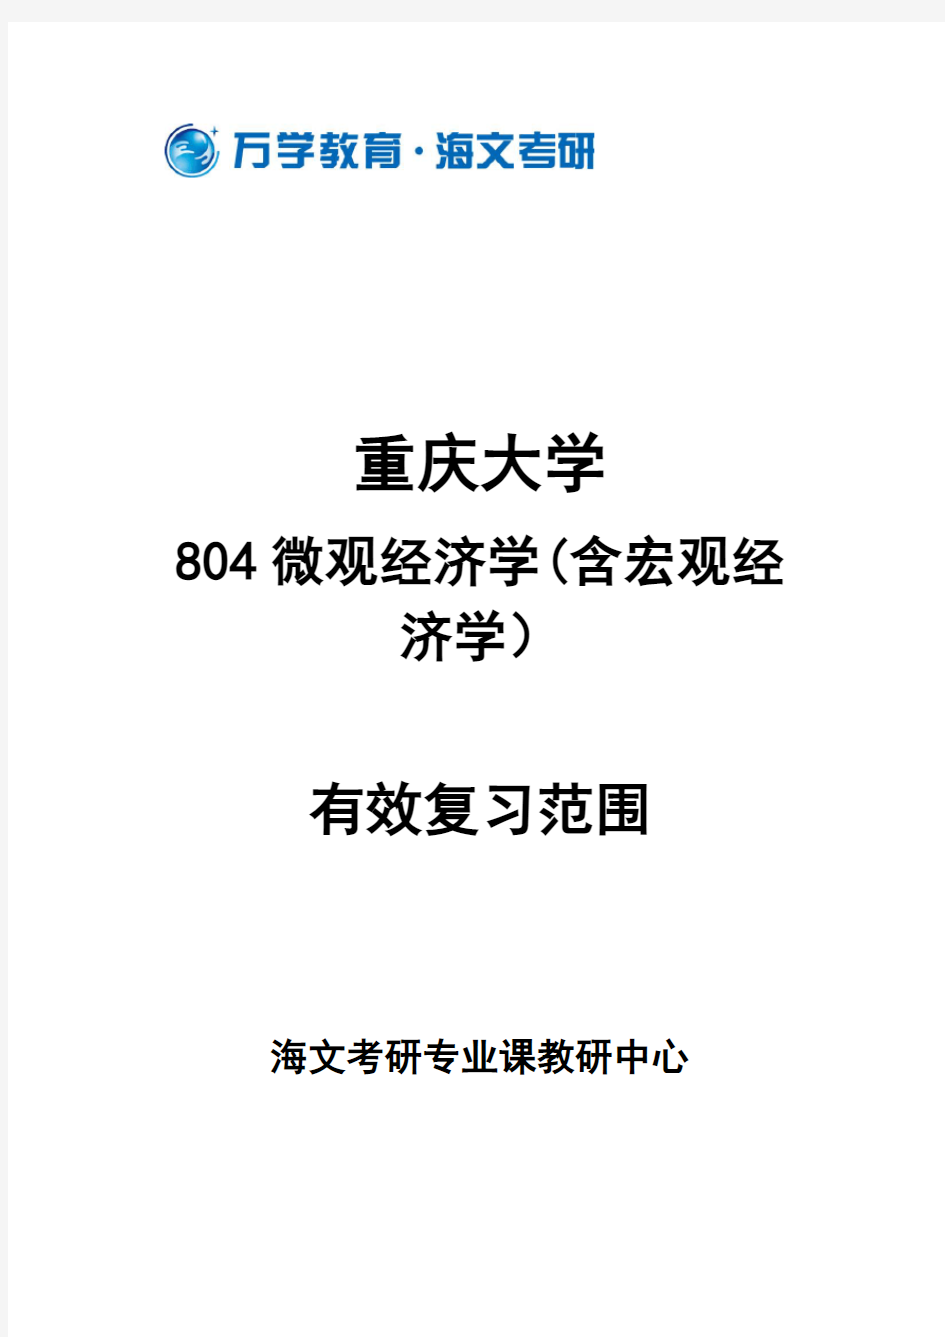 重庆大学804微观经济学(含宏观经济学)有效复习范围